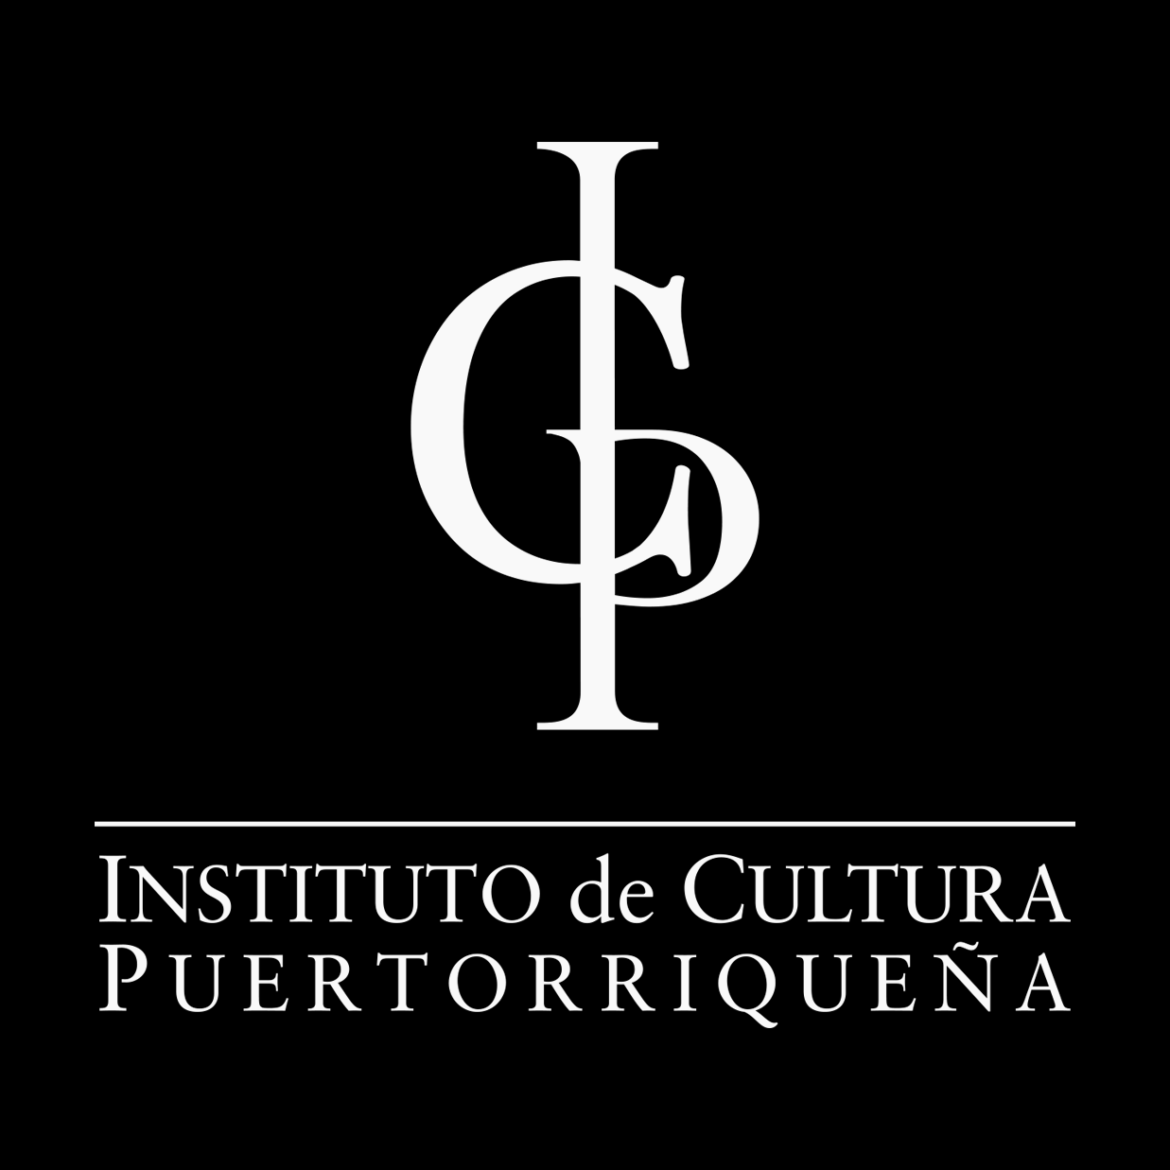 Instituto de Cultura Puertorriqueña anuncia cierre de sus museos, parques y teatros ante el paso de la tormenta Fiona